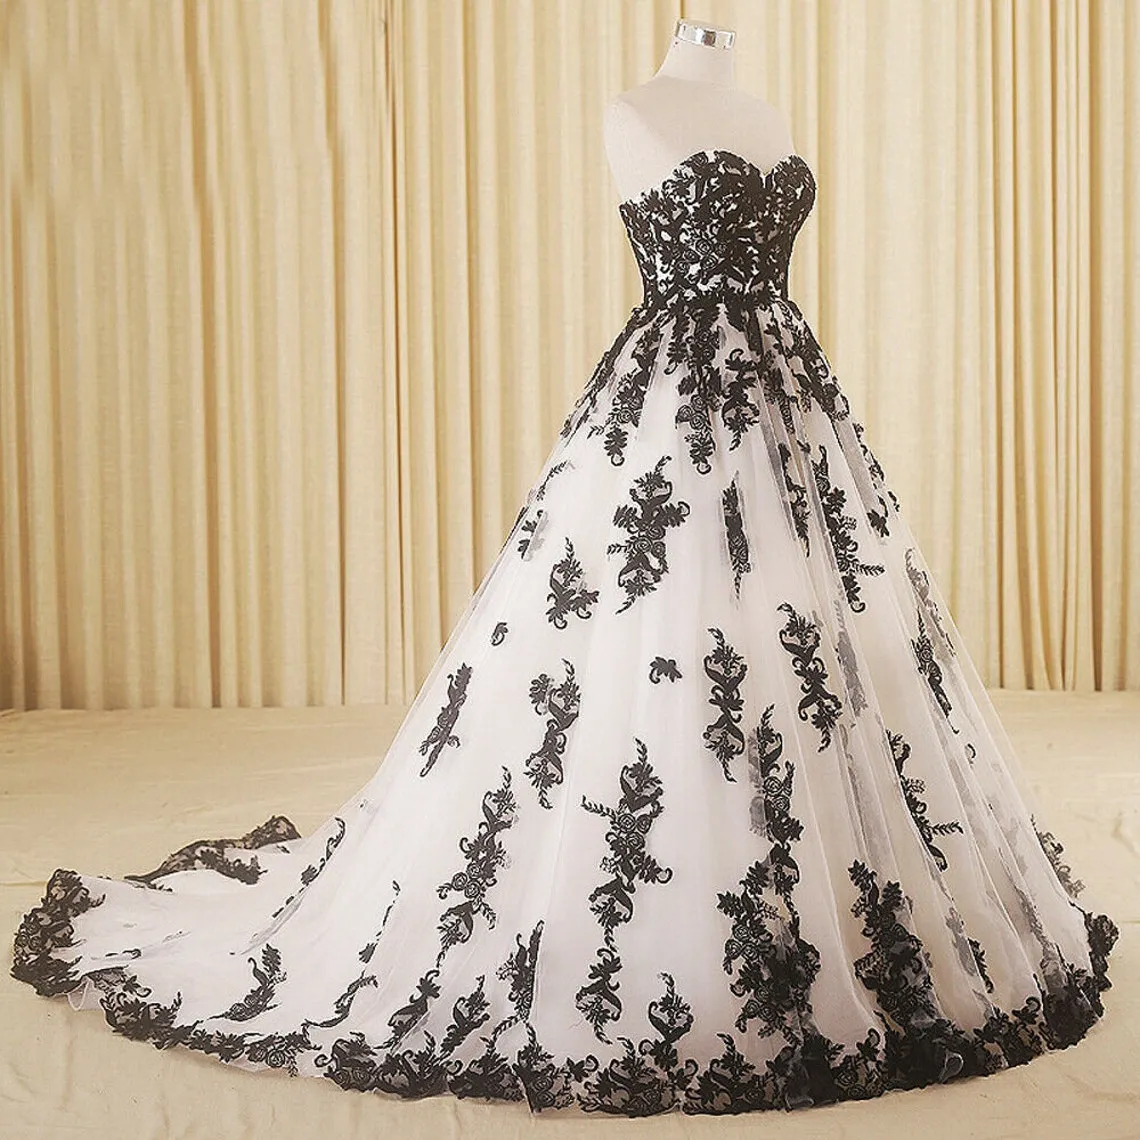 Magnifique robe de mariée trapèze noire et blanche, grande taille, robes de mariée gothiques, chérie, sans bretelles, en dentelle, sur mesure, Vintage